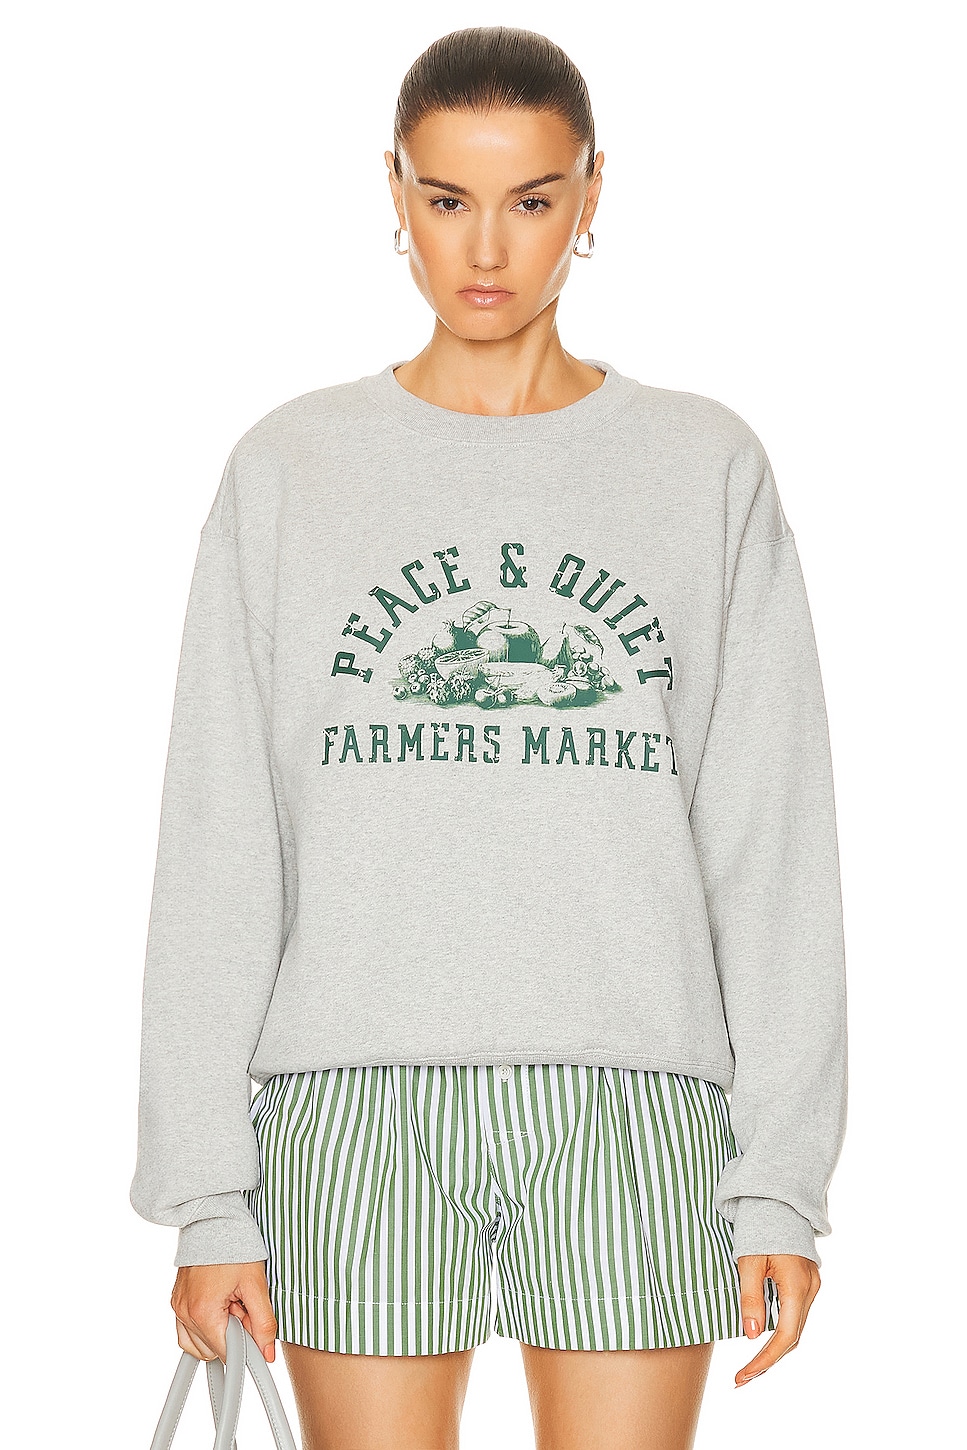 Farmers Market Sweater in Grey